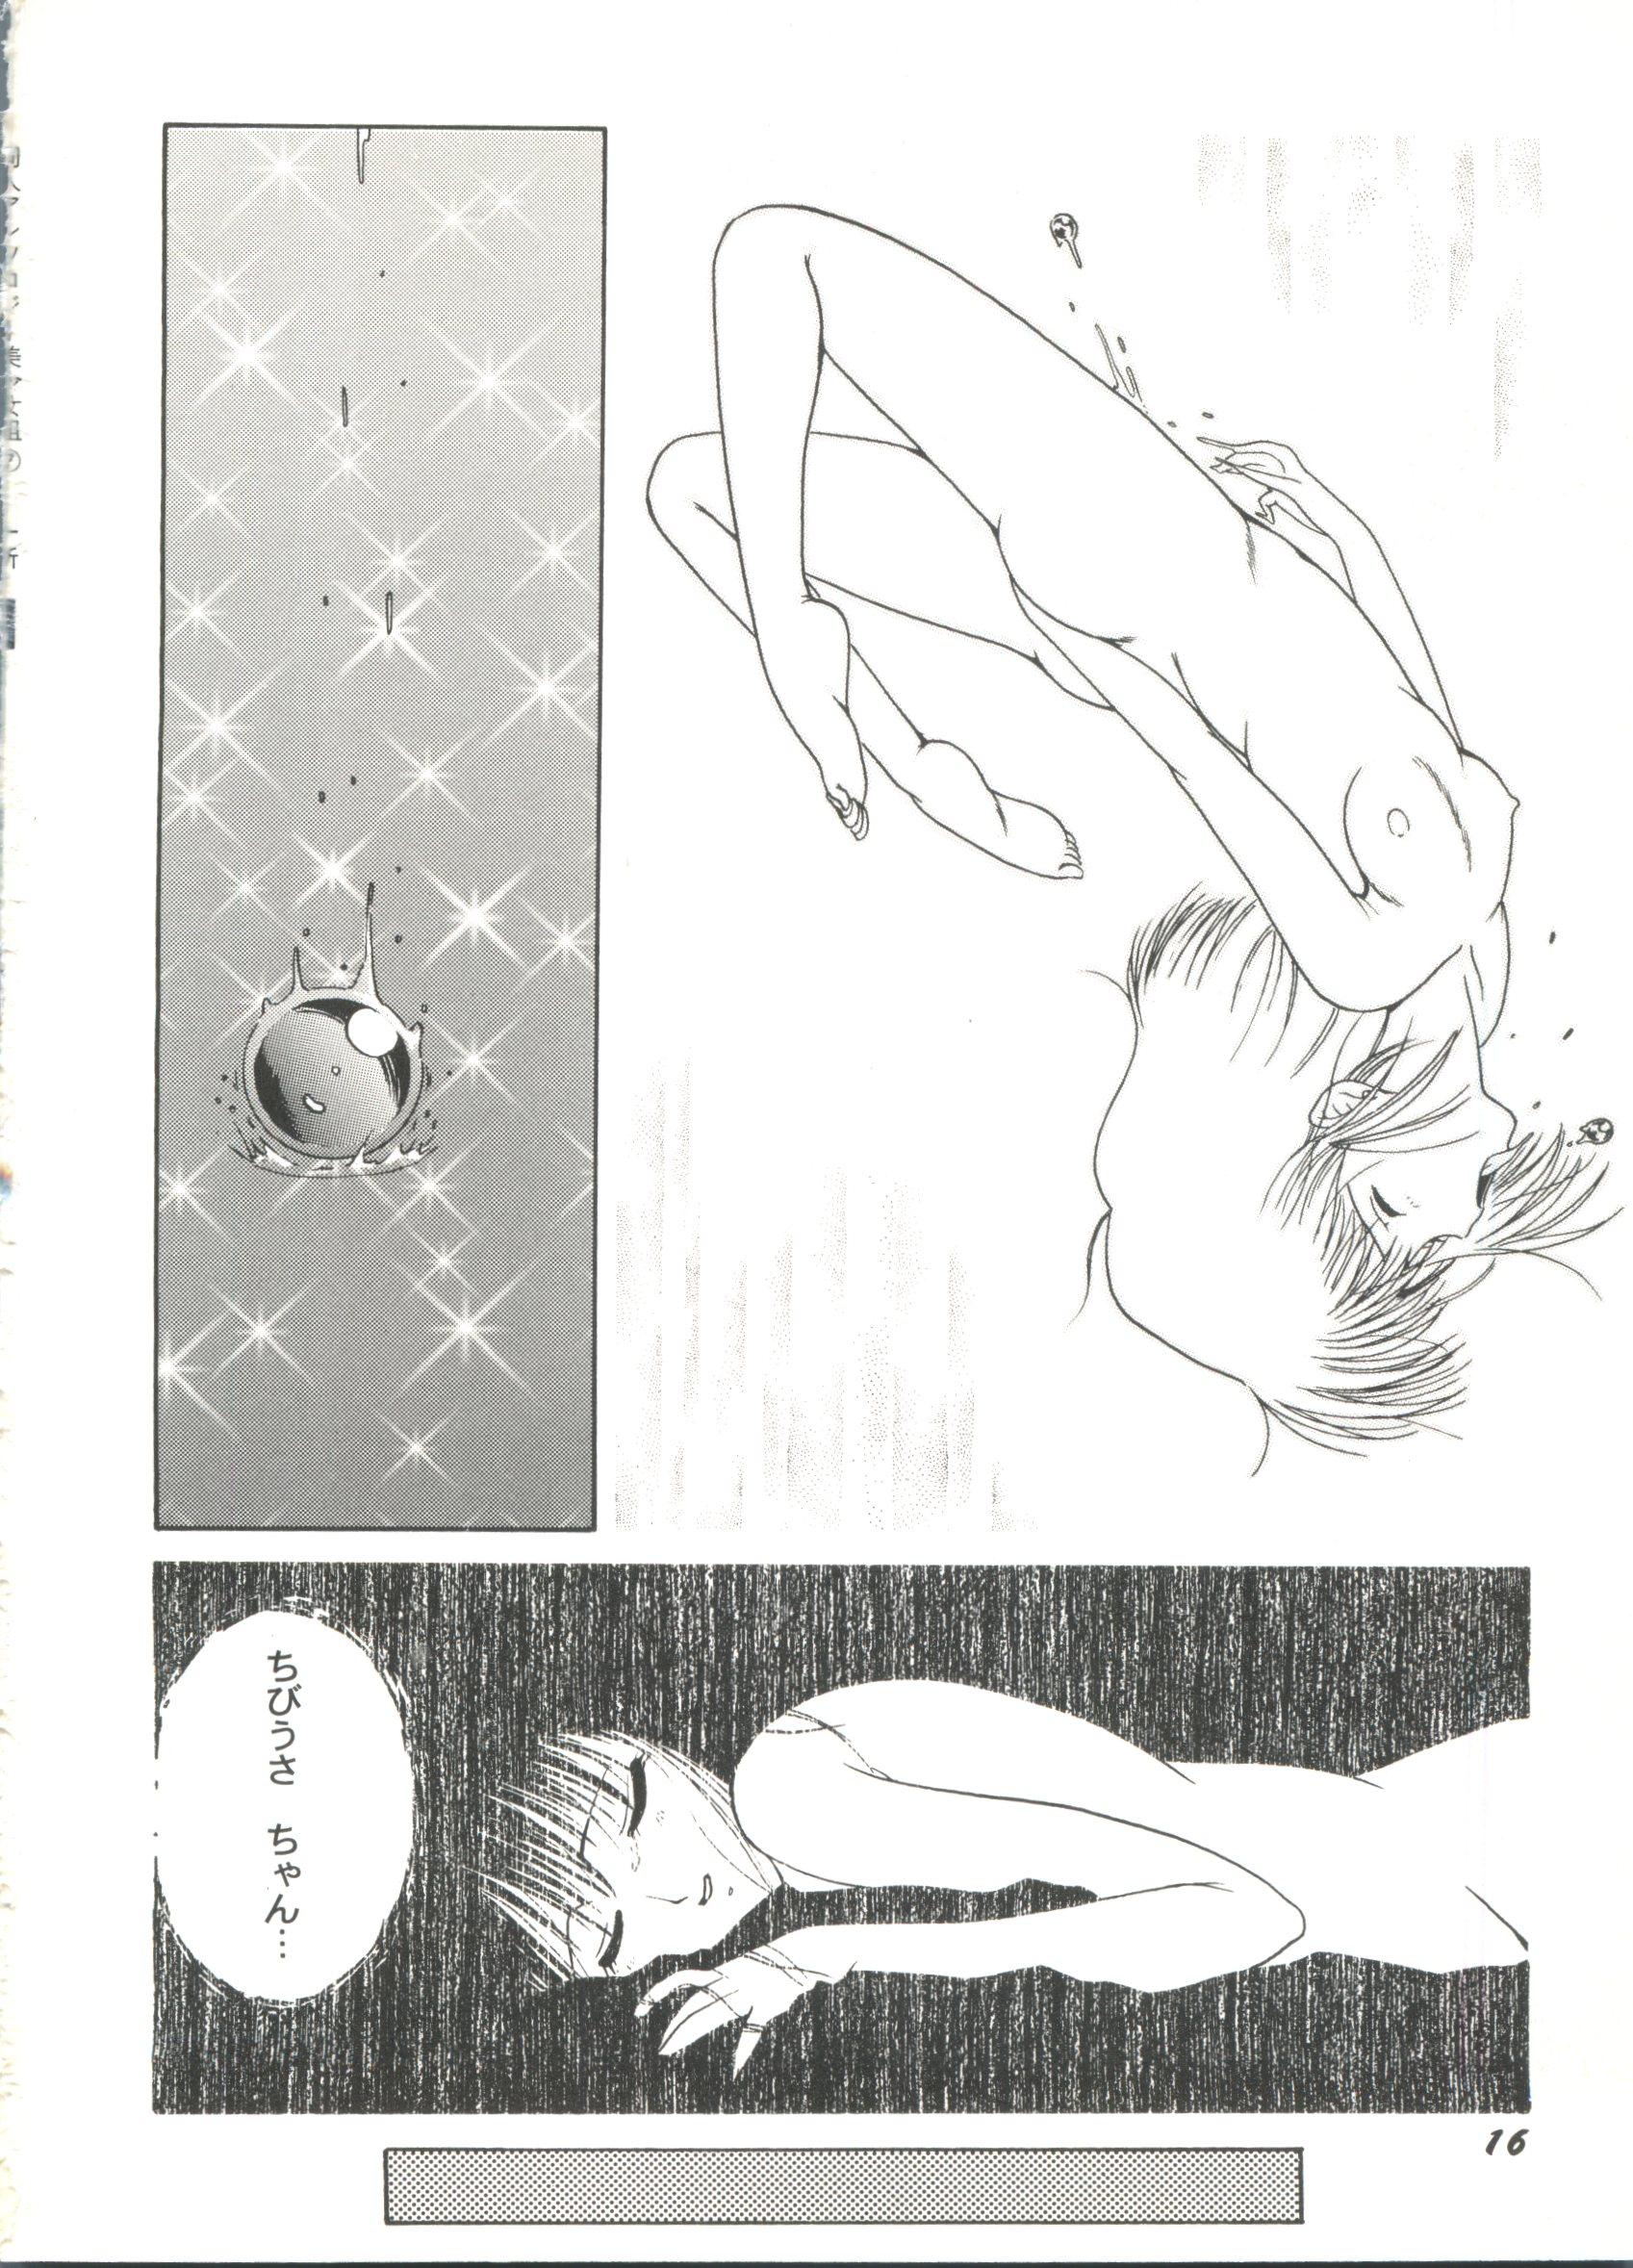 Doujin Anthology Bishoujo Gumi 7 19